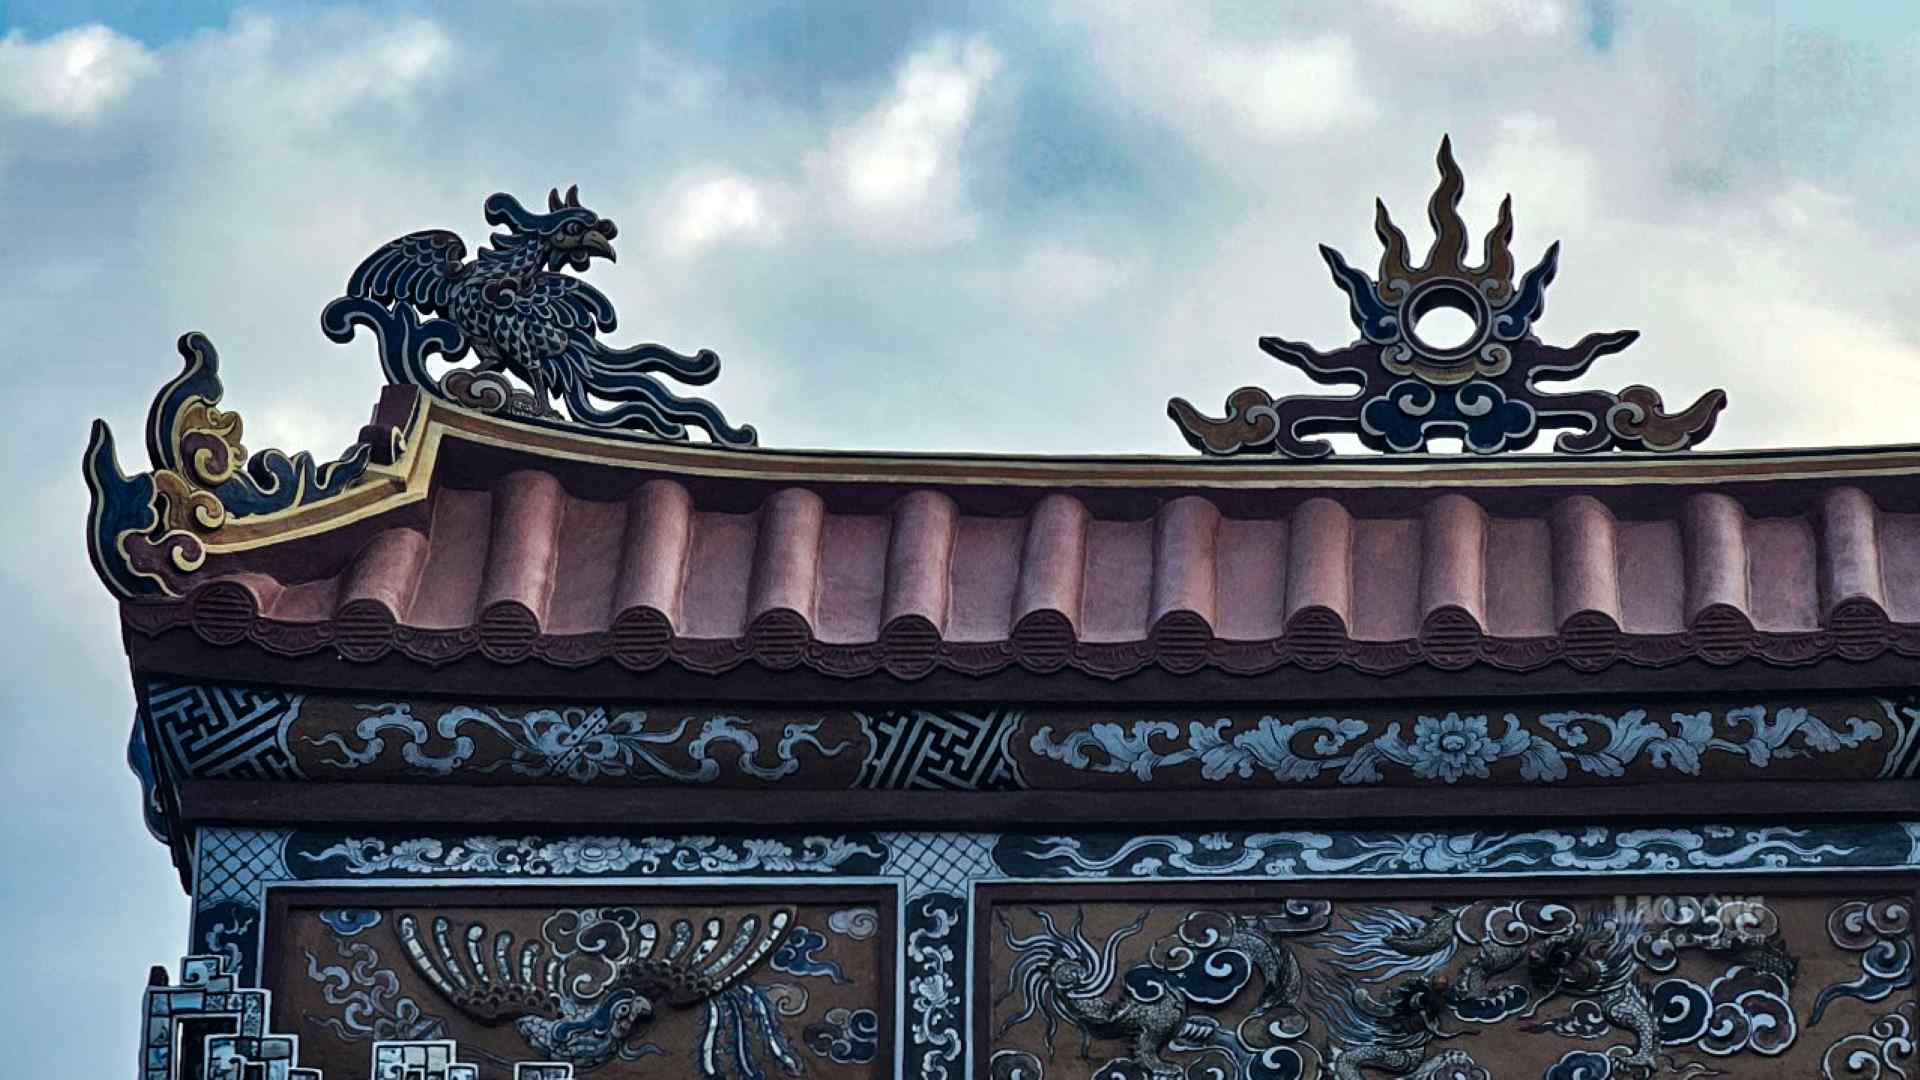 Ngoài việc làm mới nơi an nghỉ của Hoàng Thái hậu Từ Dũ, dự án còn góp phần quan trọng trong việc hoàn chỉnh tổng thể kiến trúc - cảnh quan - văn hóa của lăng vua Thiệu Trị. Ảnh: Nguyễn Luân.